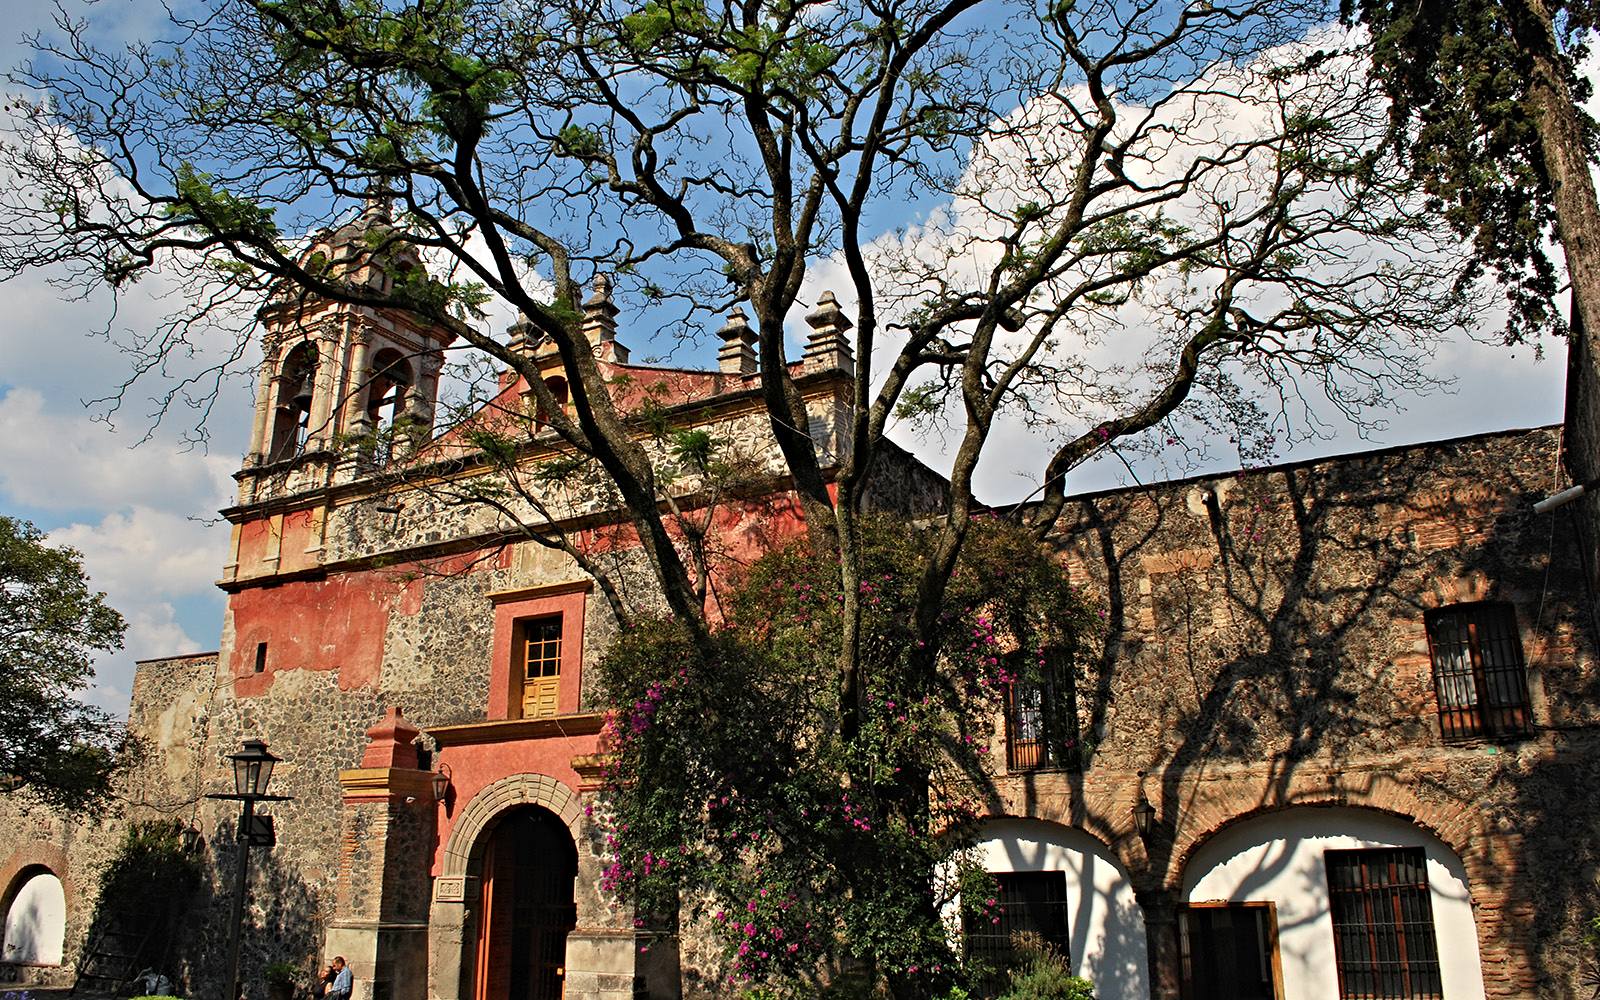 Parroquia de San Jacinto de Polonia - Escapadas por México Desconocido